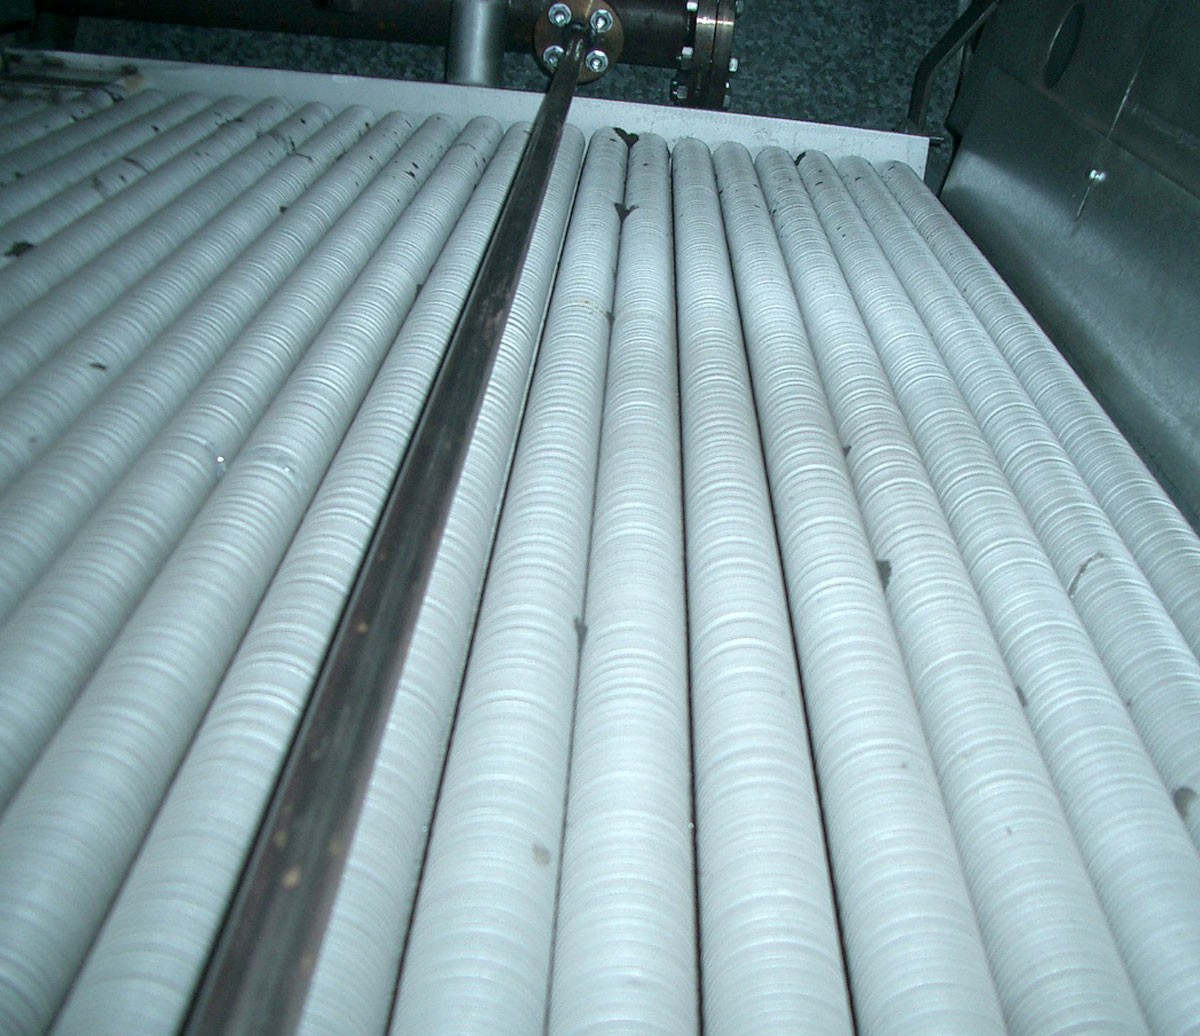 Fabricacion radiador irpen 2 - BATERIA DE TUBO ALETEADO EN ACERO INOXIDABLE 1.4404 (316L)